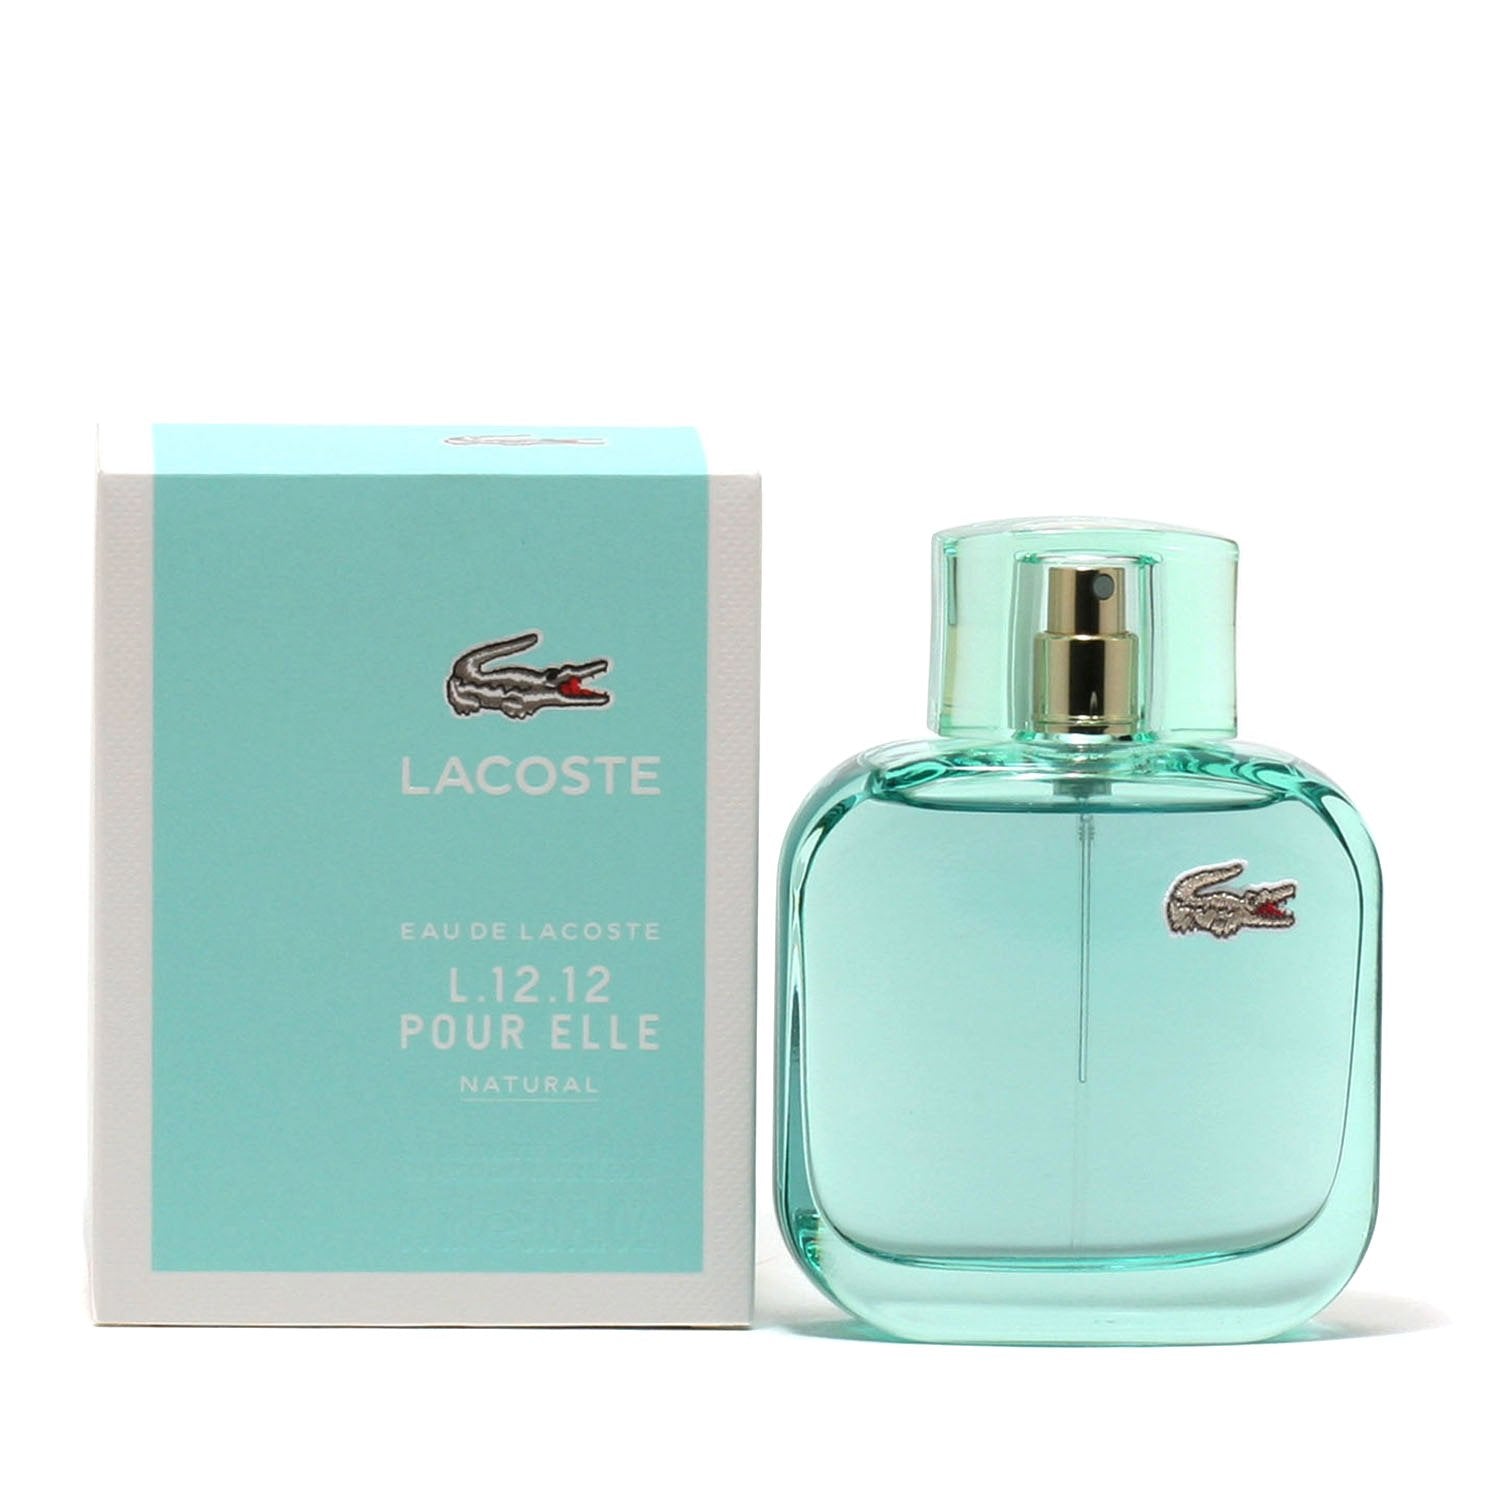 LACOSTE EAU DE LACOSTE L.12.12 ELLE NATURAL FOR WOMEN - EAU DE T Fragrance